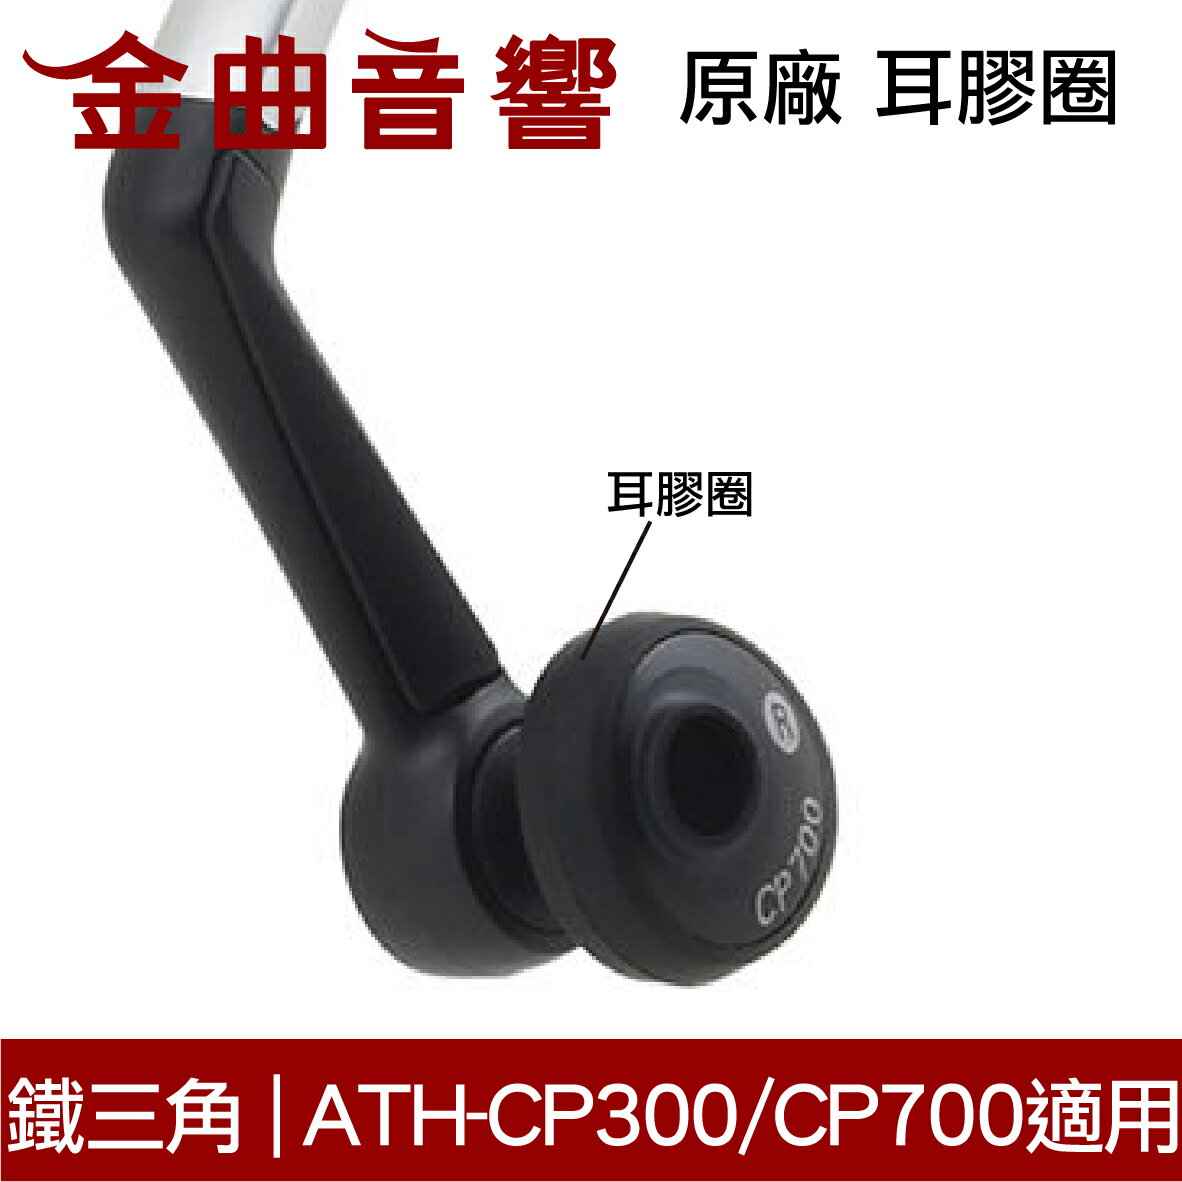 鐵三角 原廠 耳膠圈 黑色 一對 ATH-CP300 ATH-CP700 適用 | 金曲音響